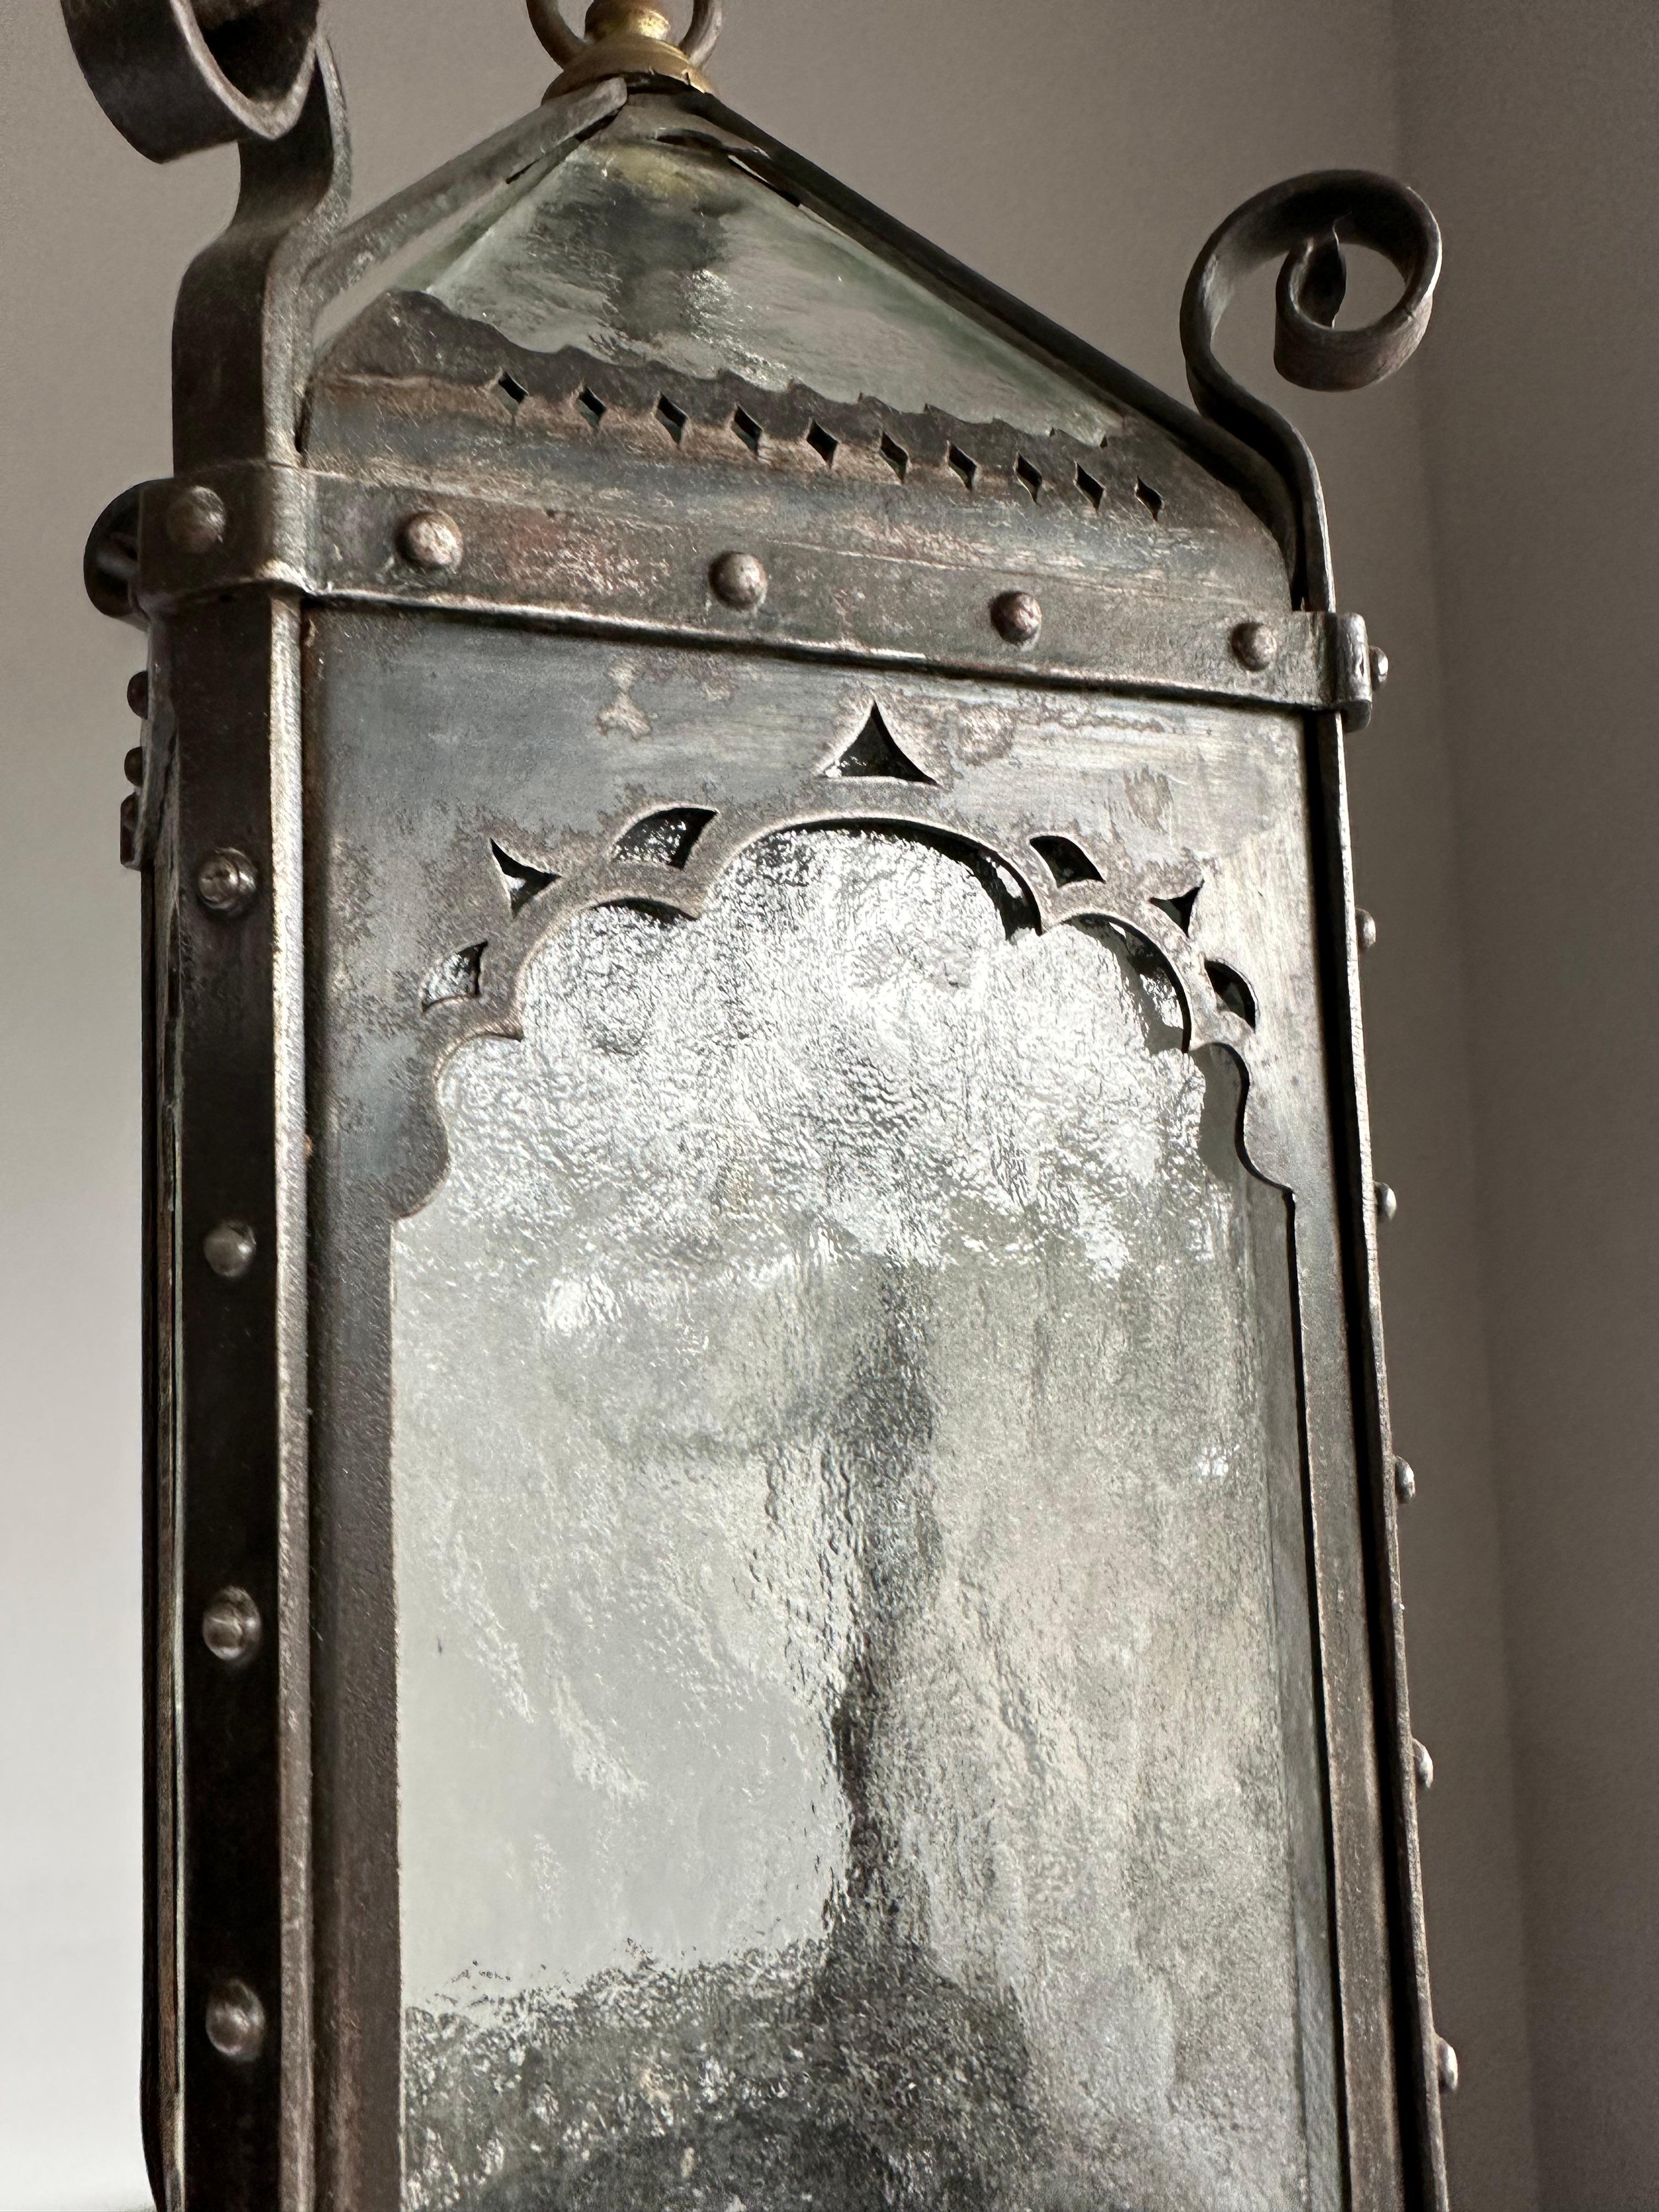 European Arts & Crafts Era Gothic Revival Nailed Wrought Iron & Glass Lantern, Pendant